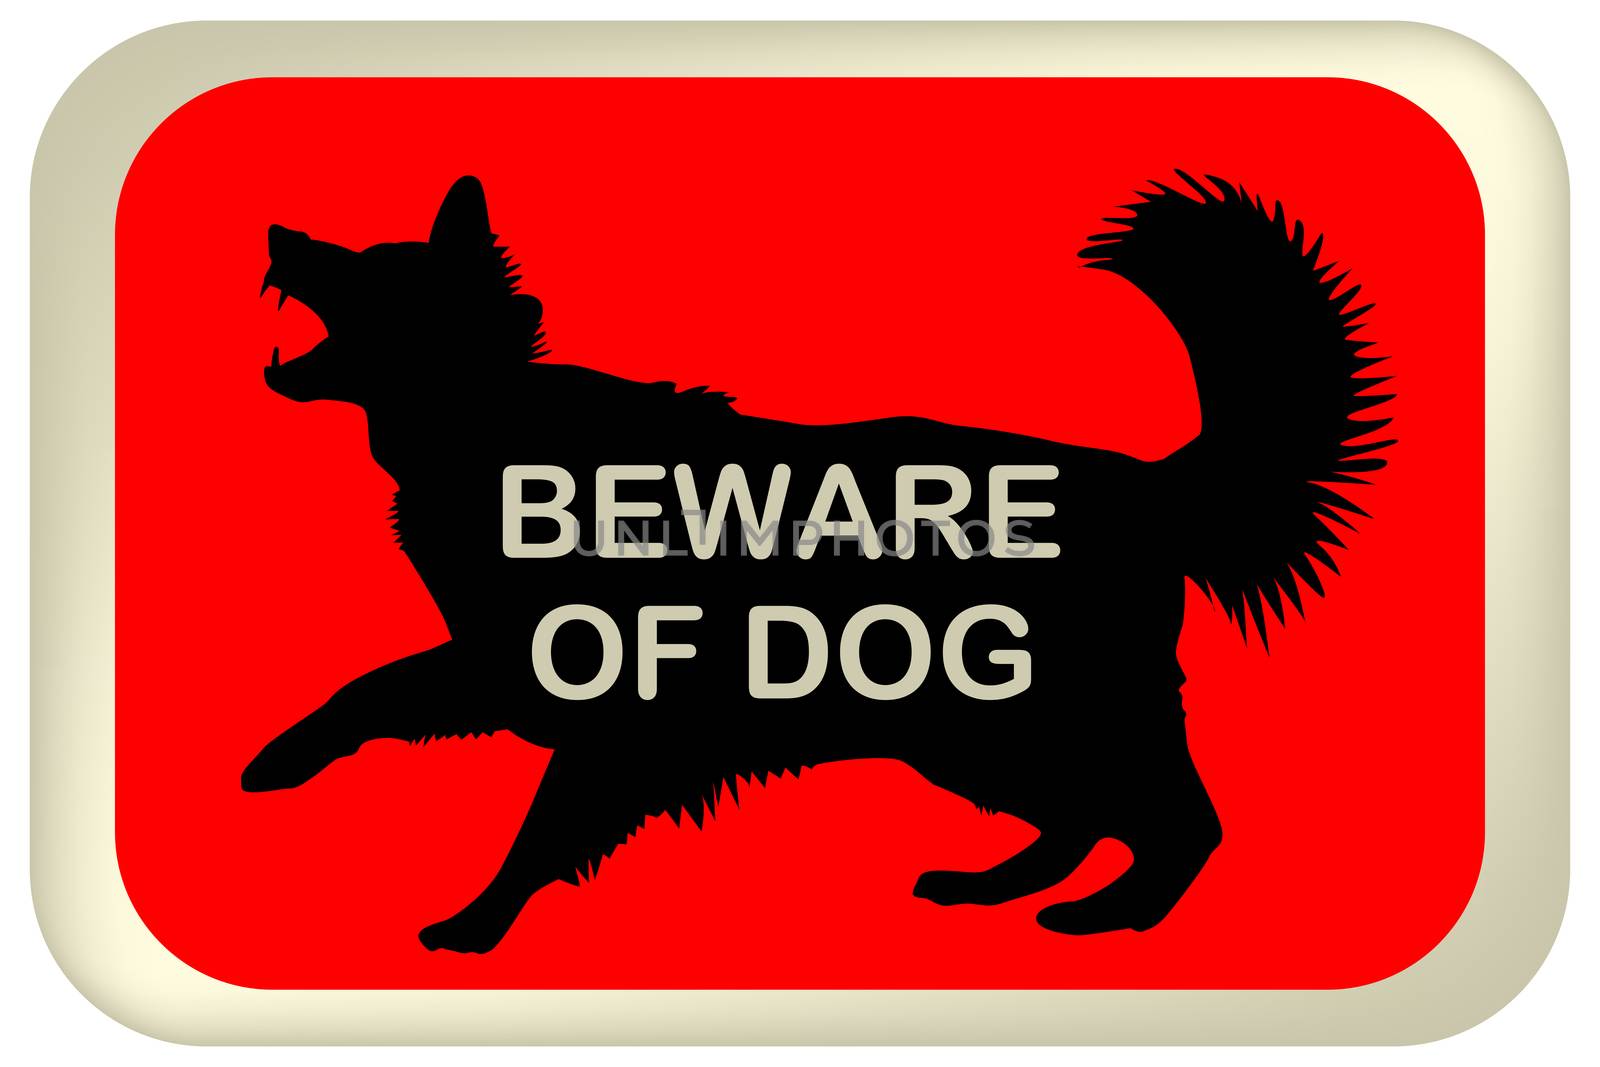 BEWARE OF DOG sign by hibrida13